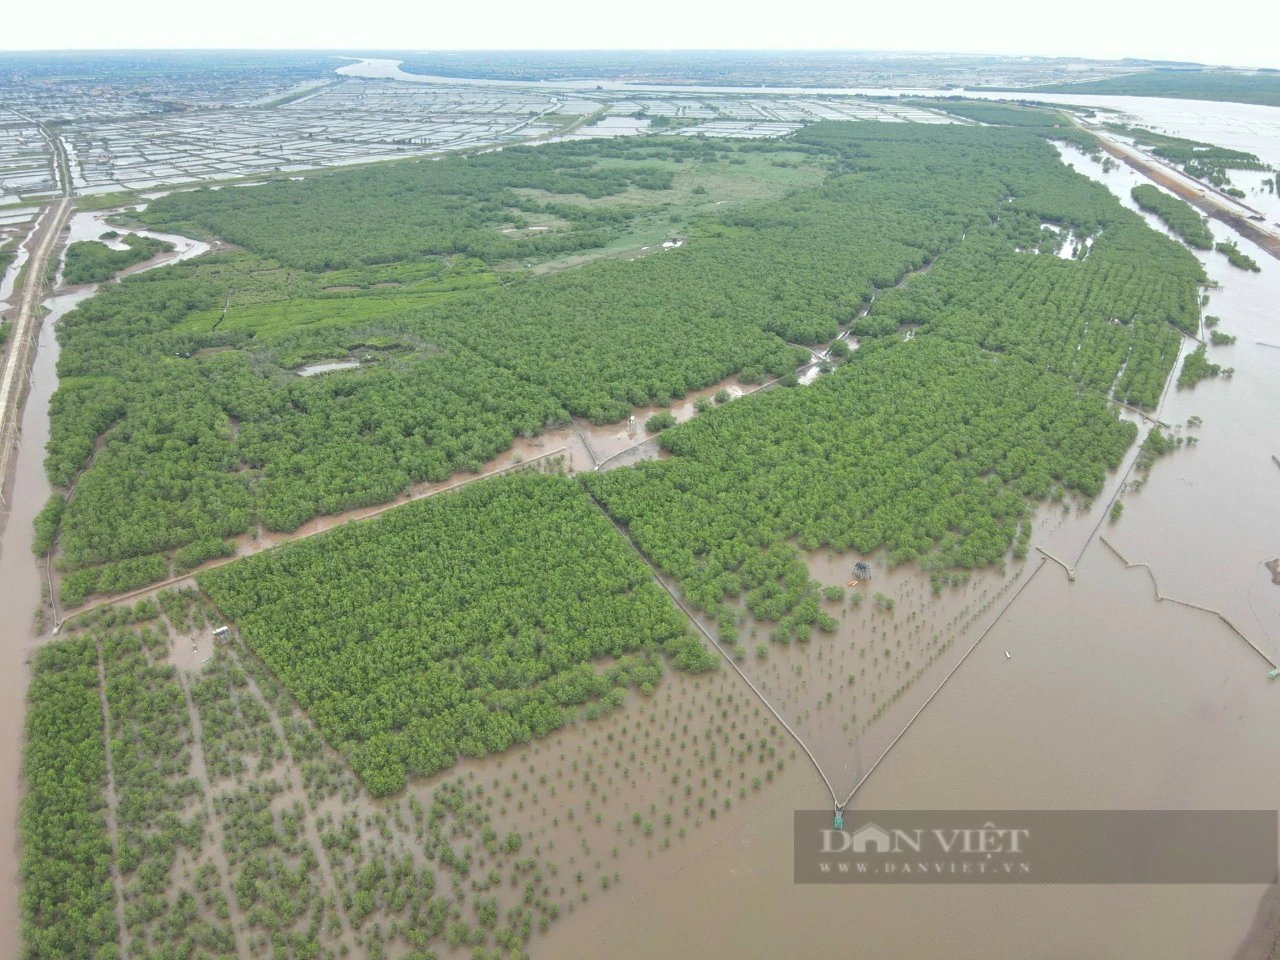 Đi tìm chữ “xanh” trong nông nghiệp: Trồng rừng hấp thụ carbon, thêm màu xanh, vừa thêm tiền tại Ninh Bình - Ảnh 2.